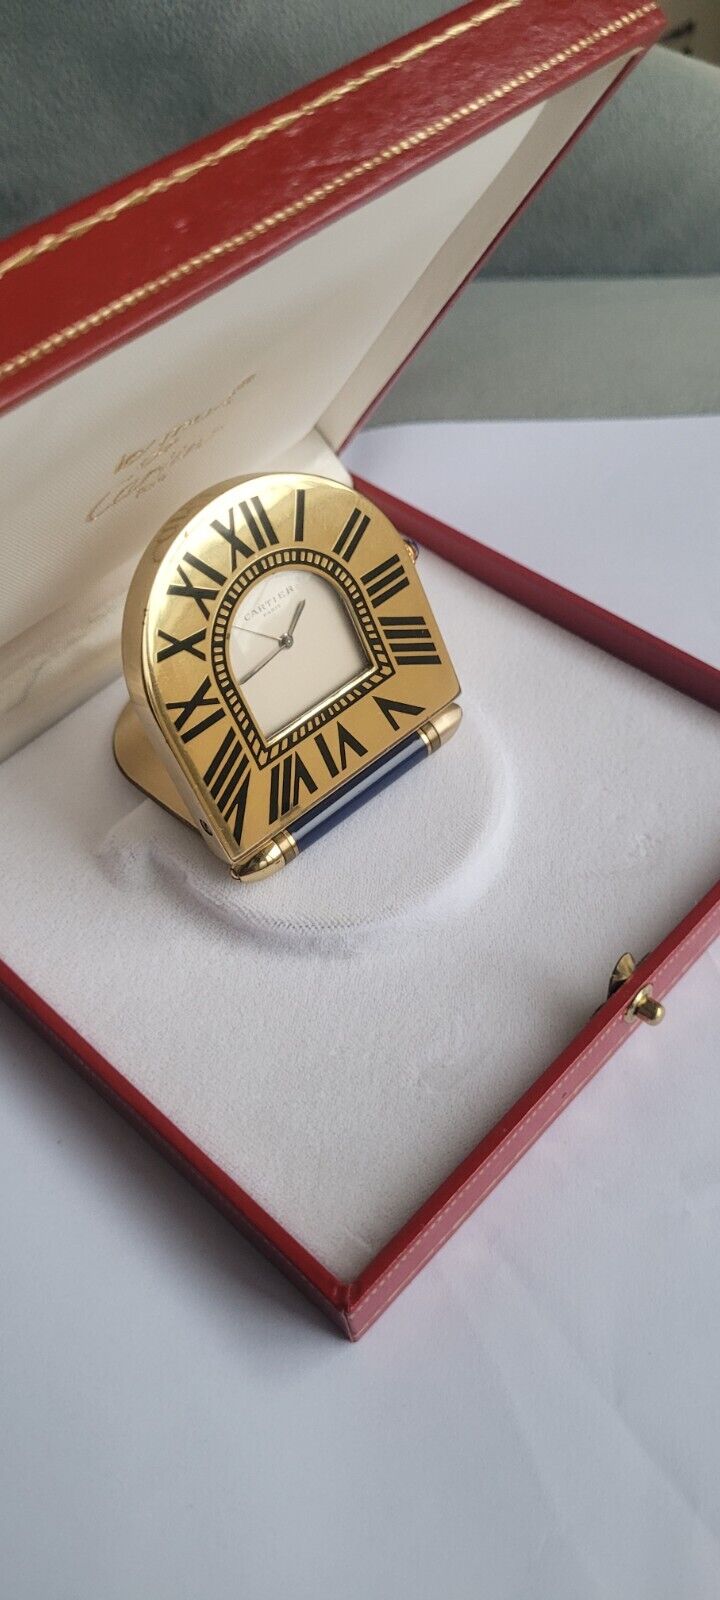 100% Authentic vintage Cartier Paris desk clock,enamel Roman numbers, with box